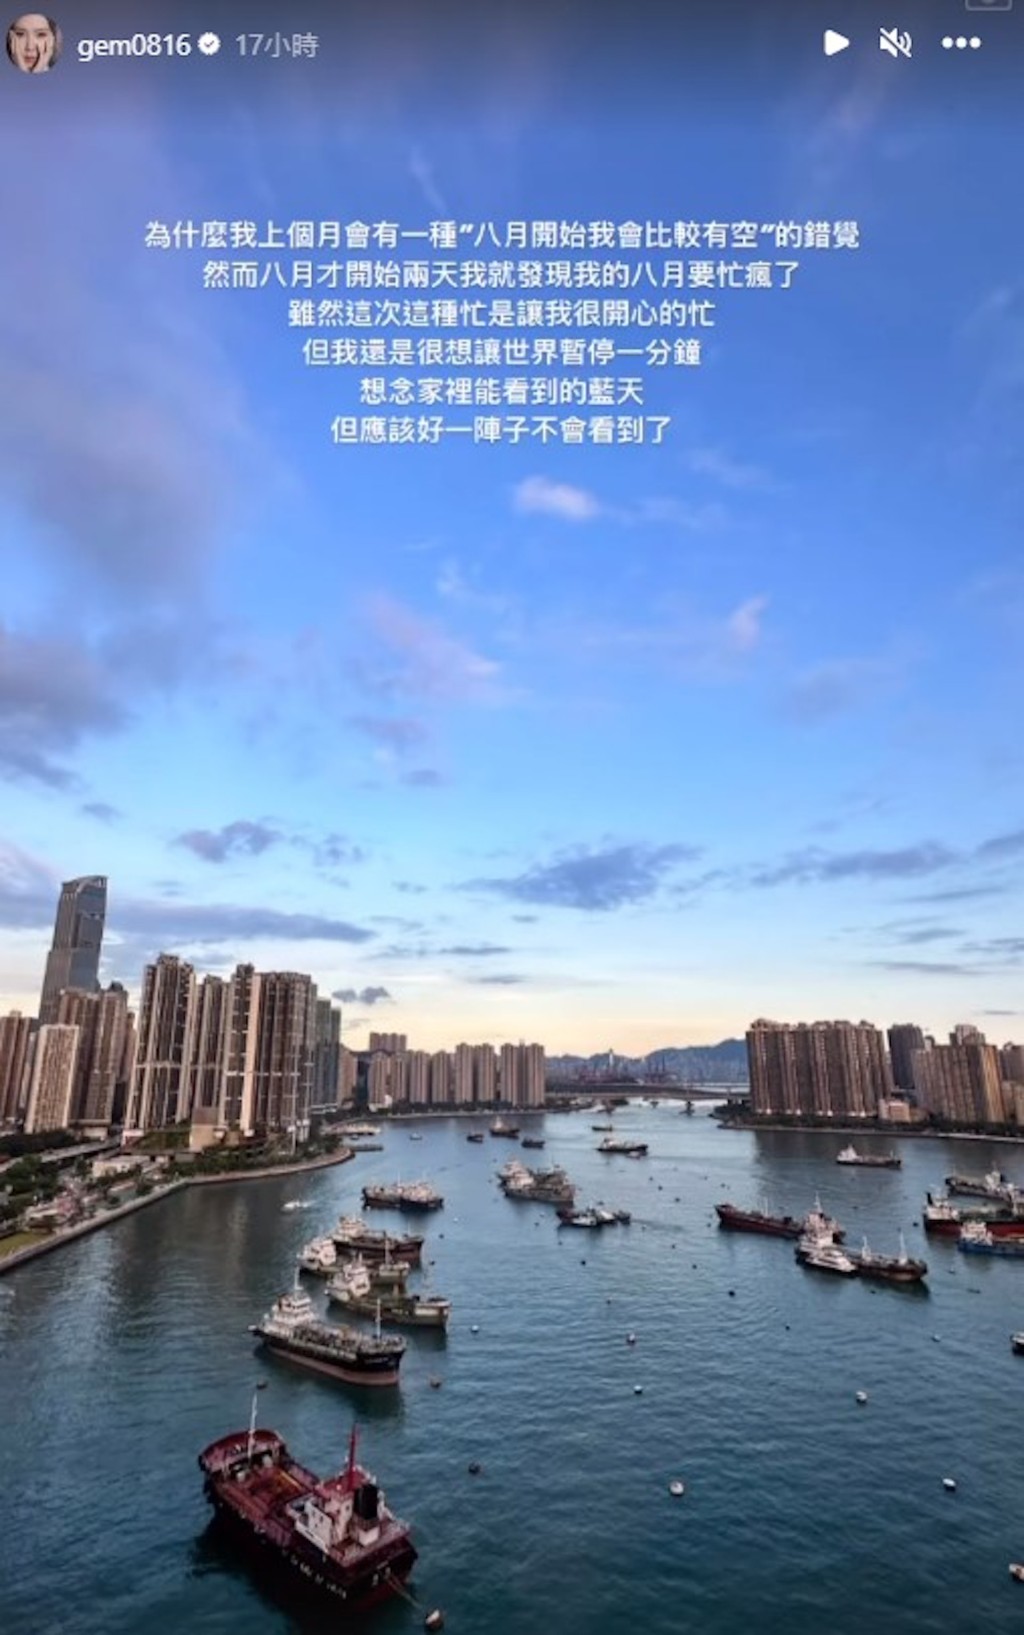 邓紫棋日前贴出荃湾千尺豪宅无敌海景照。